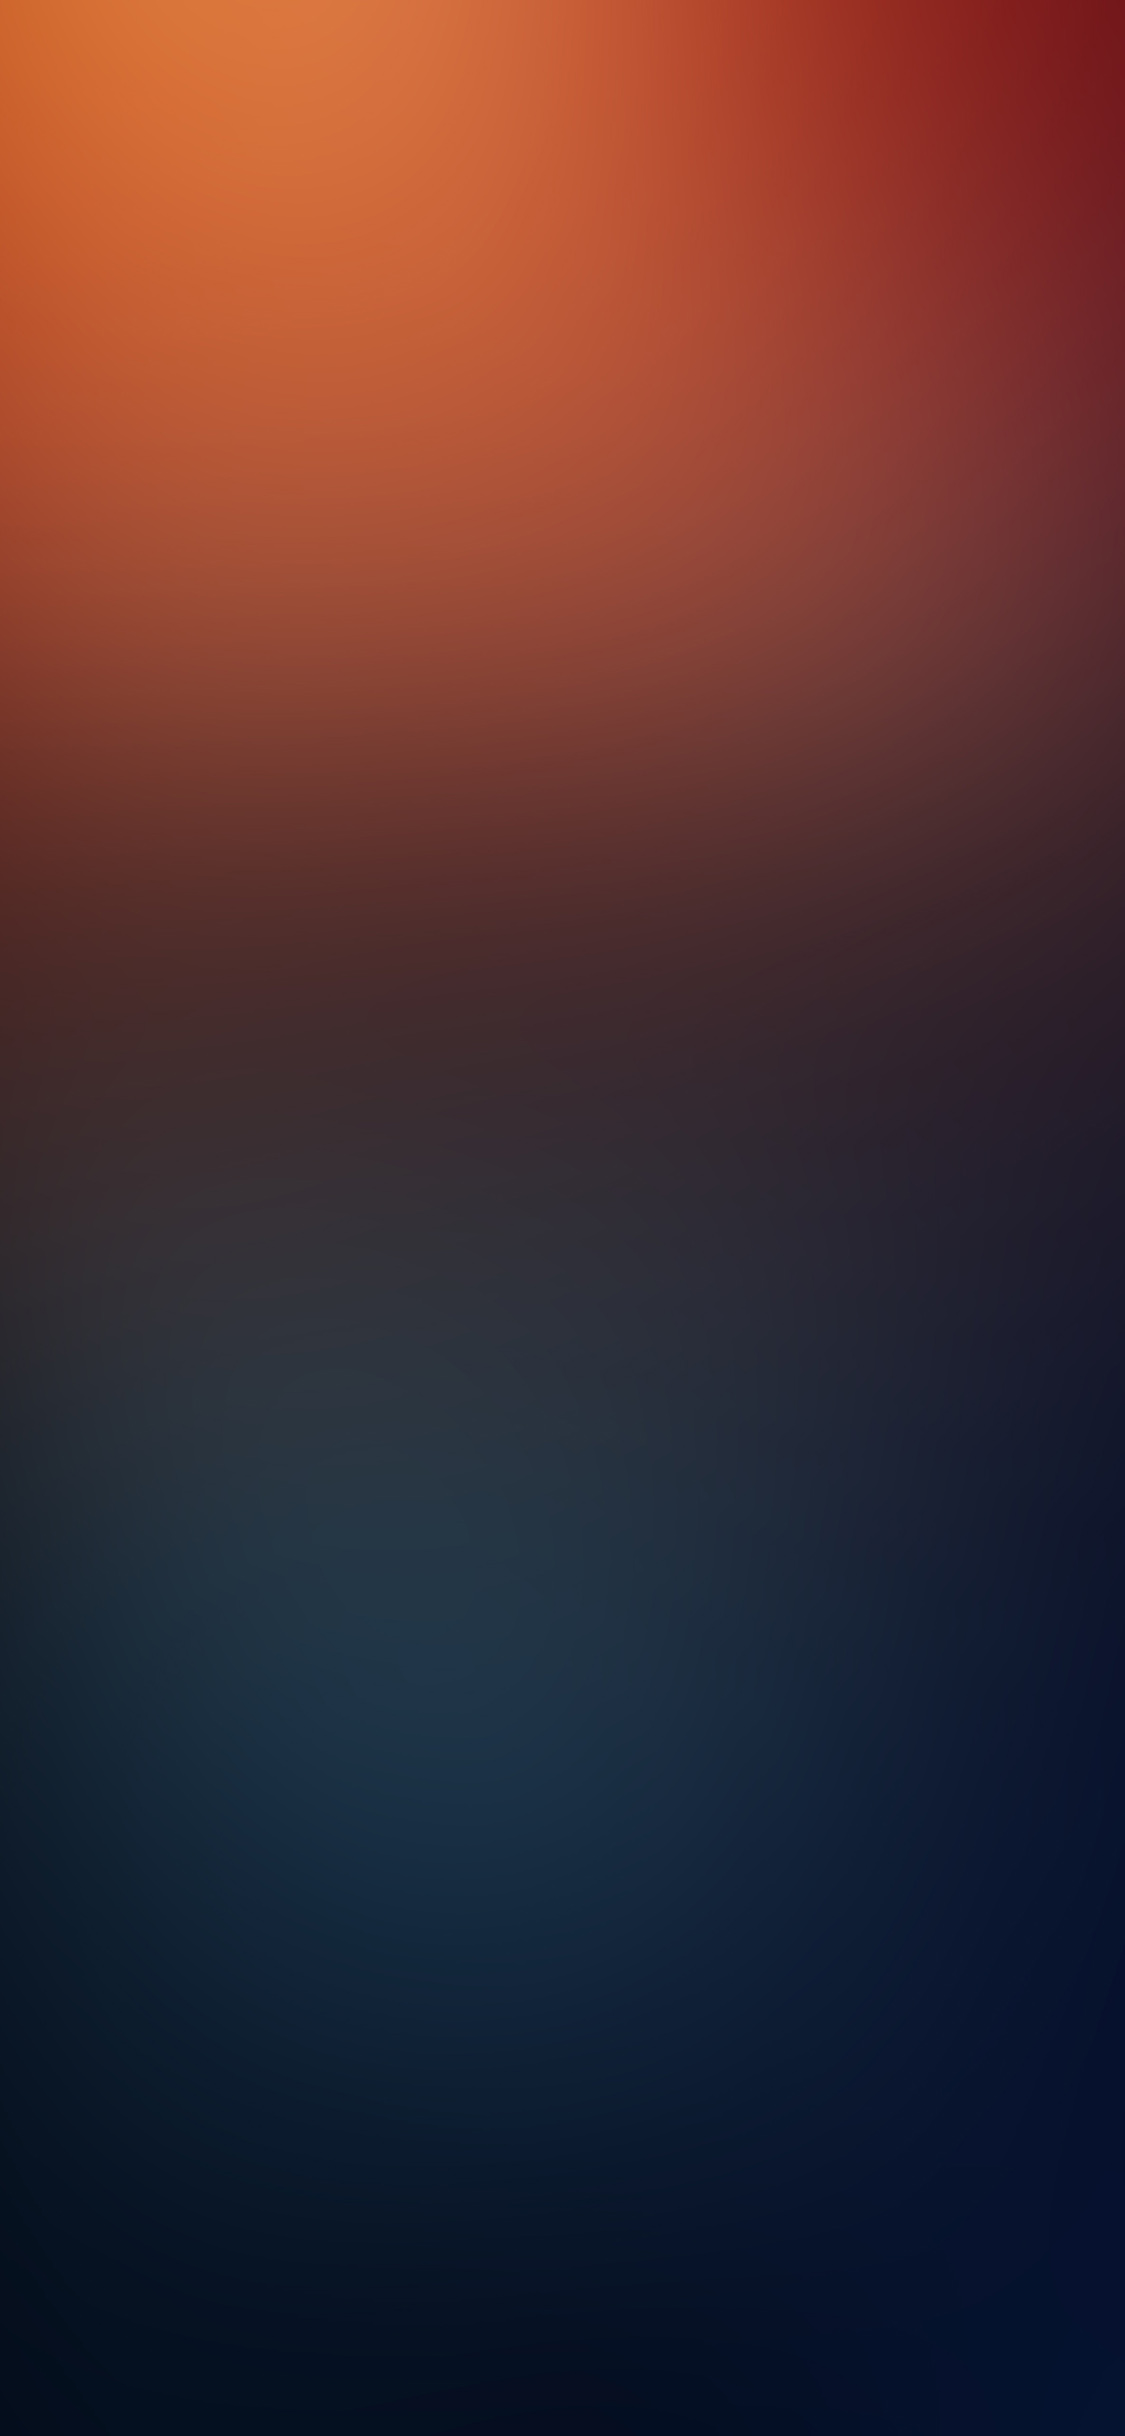 iPhone X wallpaper. red blue blur gradation